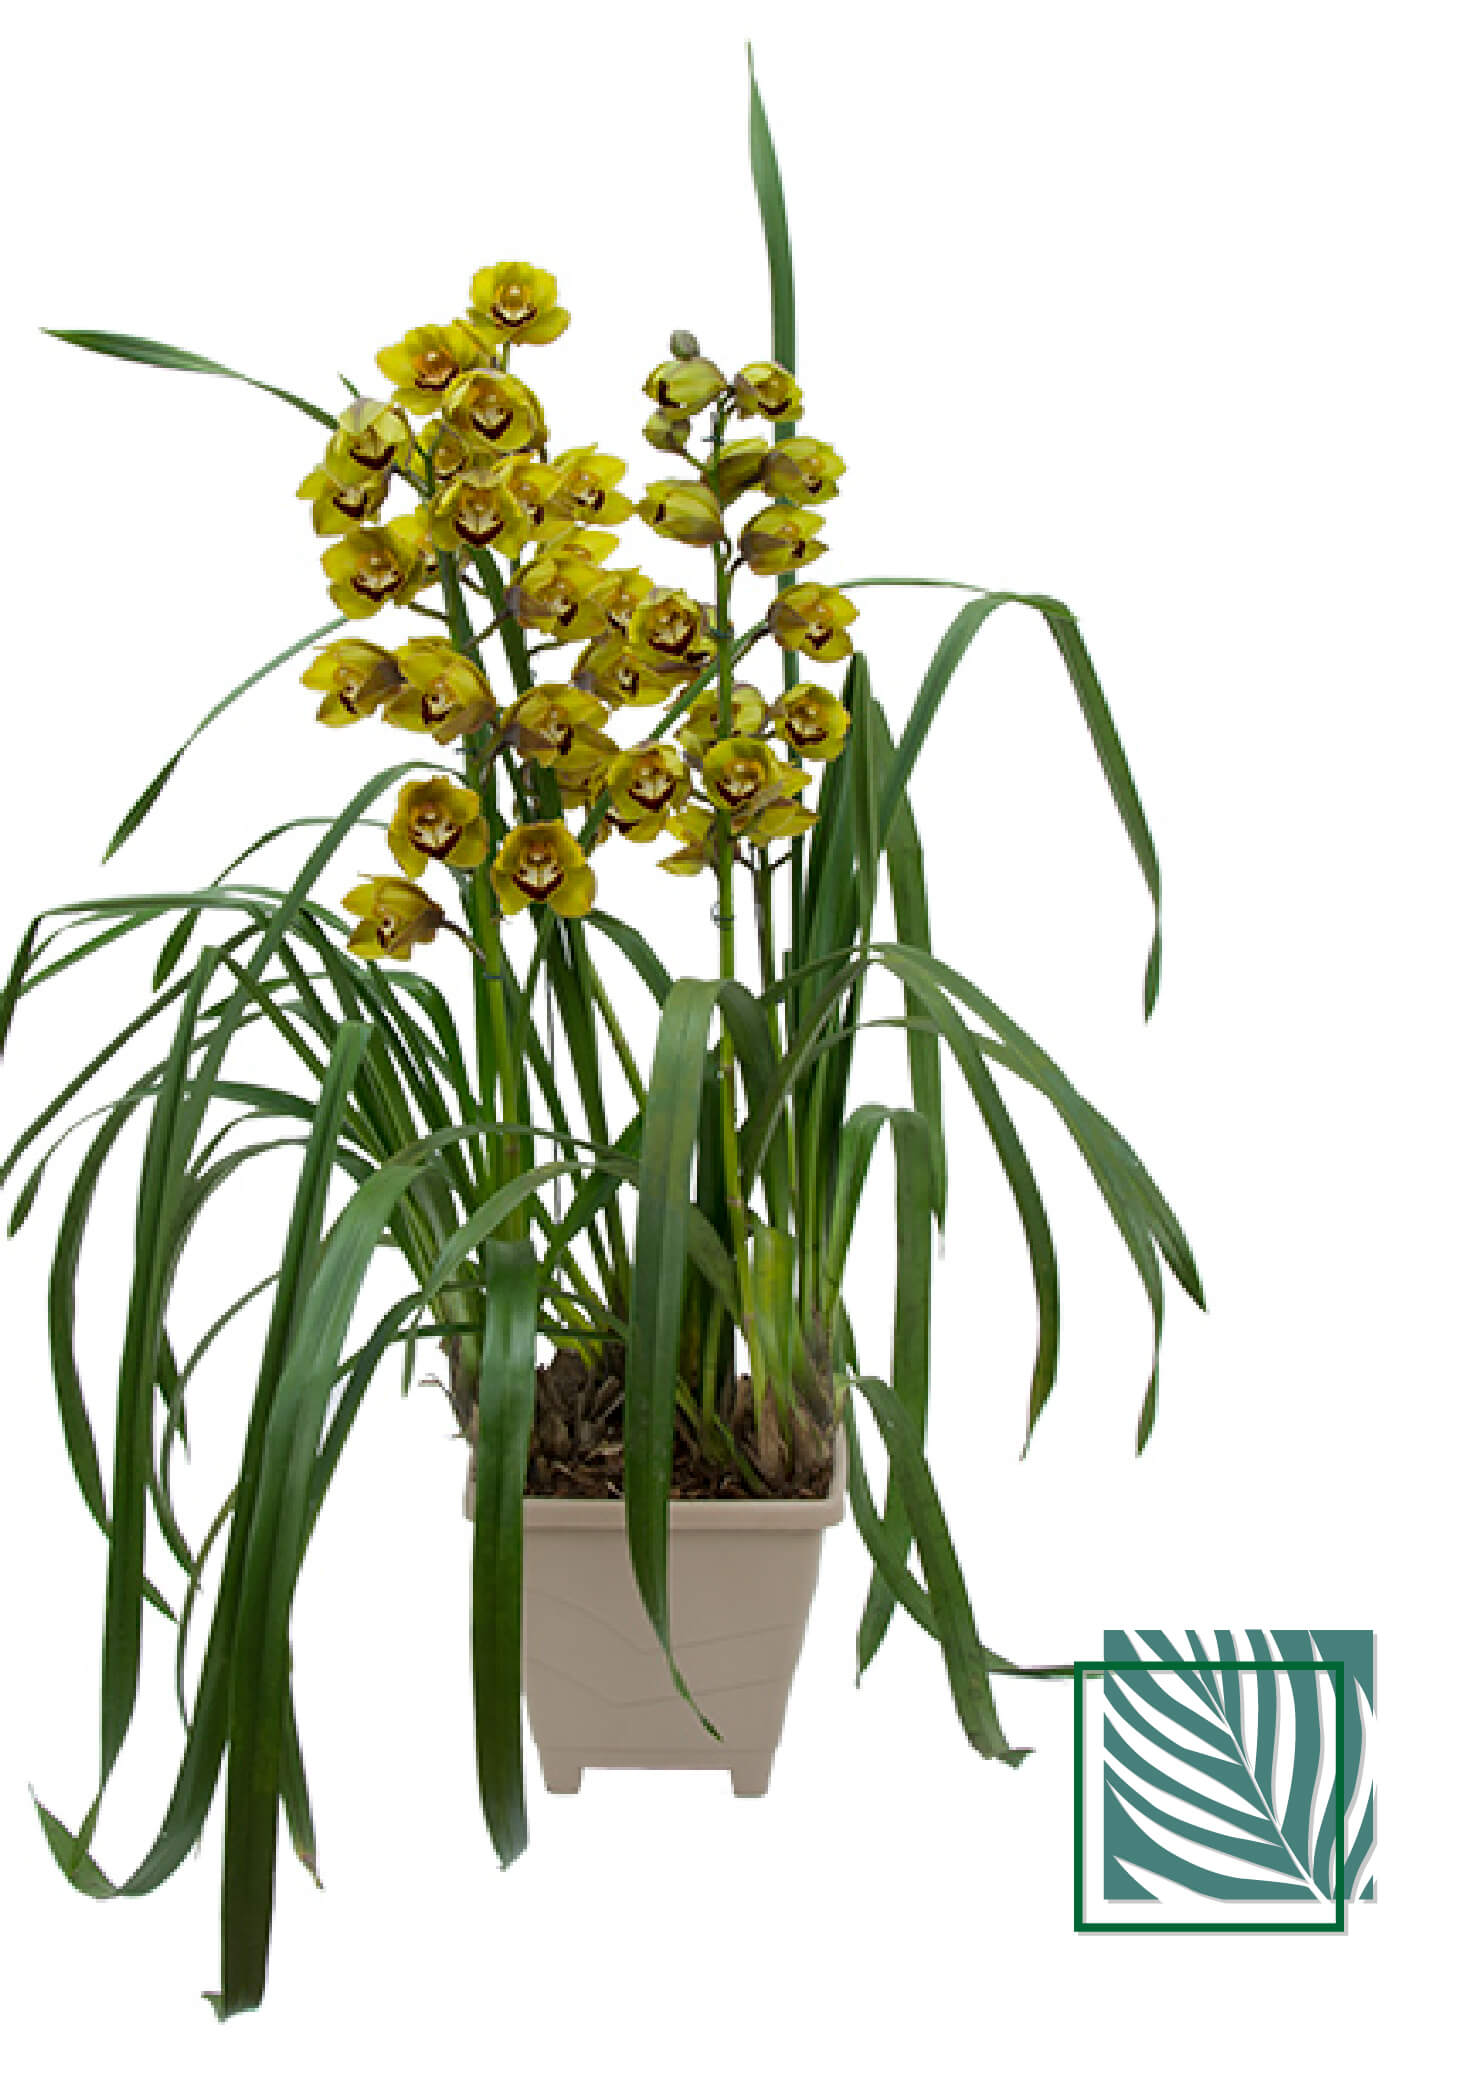 Orquídea Cymbidium - Natureza Urbana: Sofisticação Sustentável